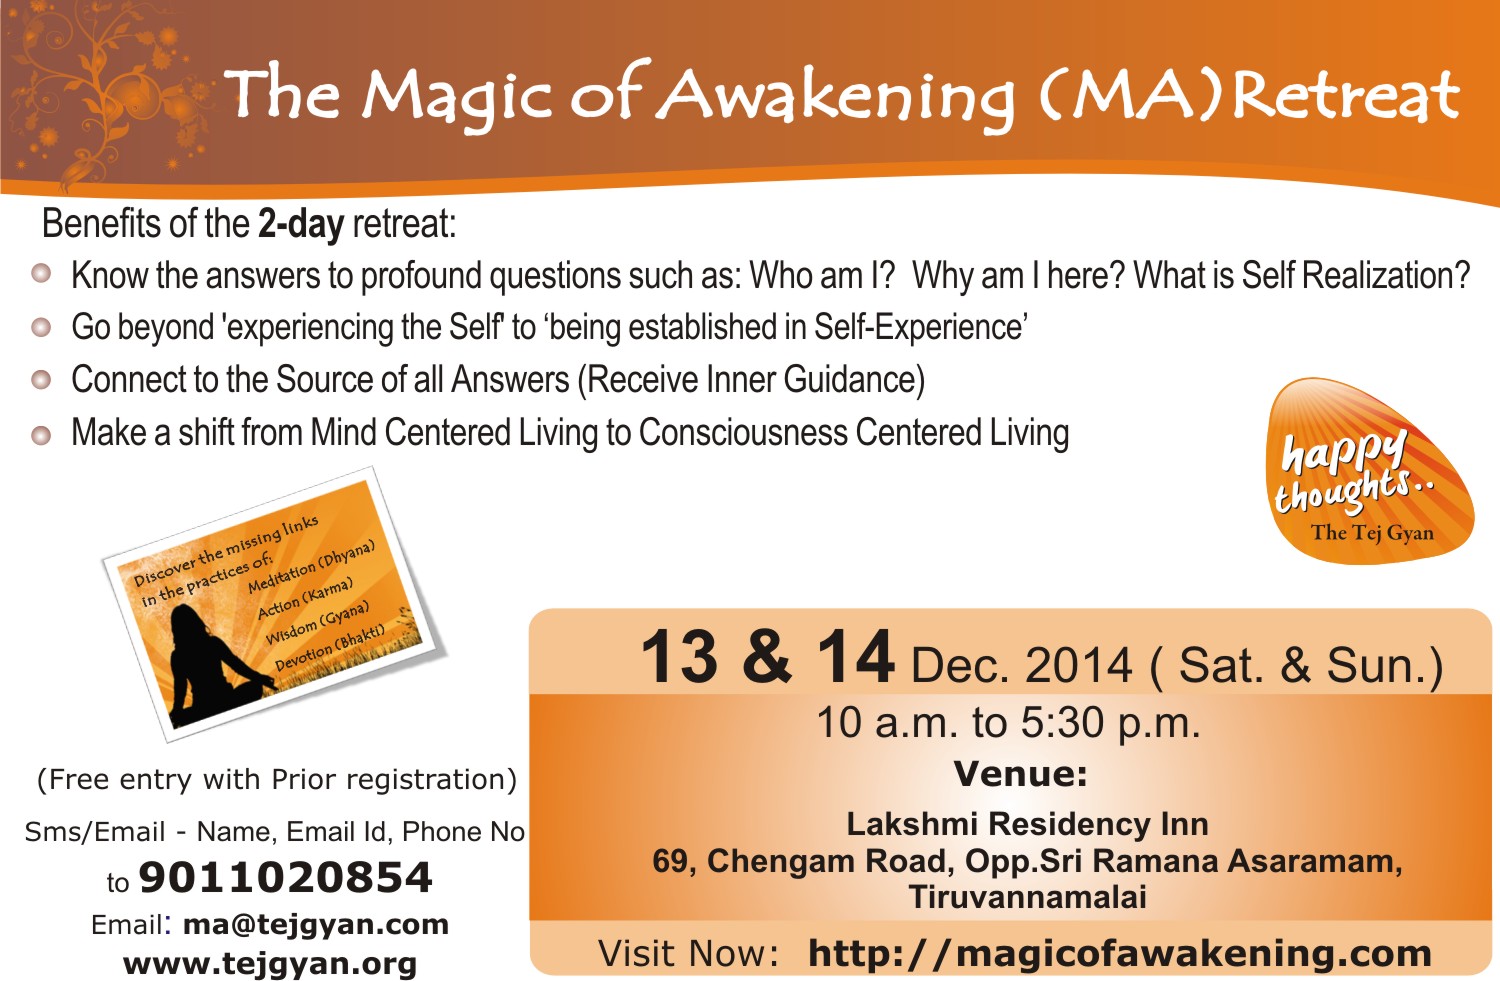 Attend 'The Magic of Awakening Retreat' in Tiruvannamalai